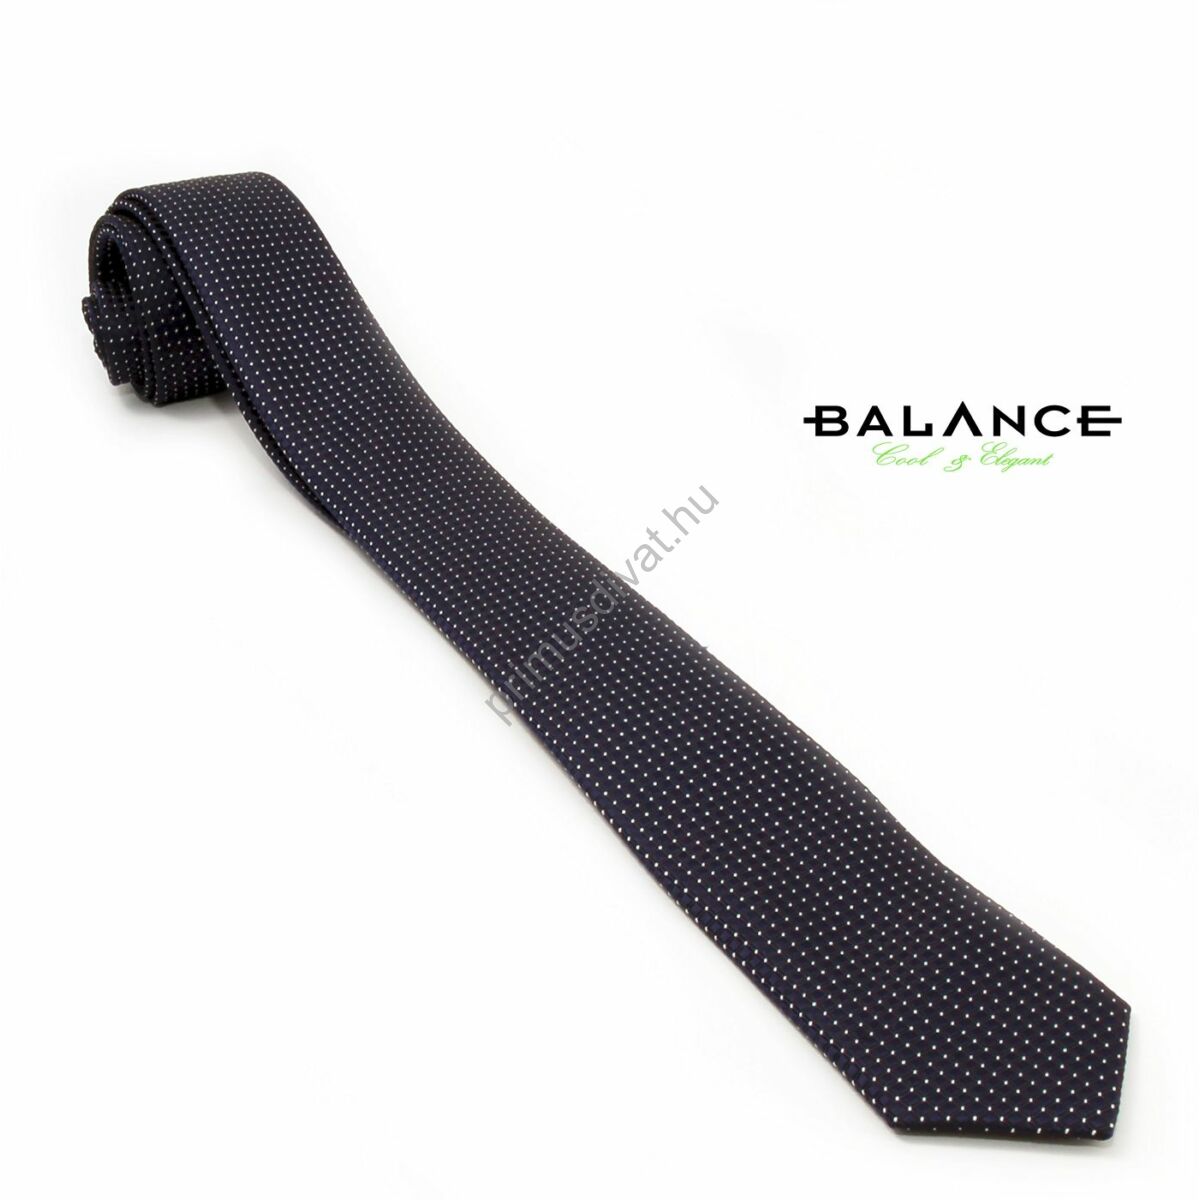 Balance apró fehér pöttyös fekete keskeny selyem nyakkendő